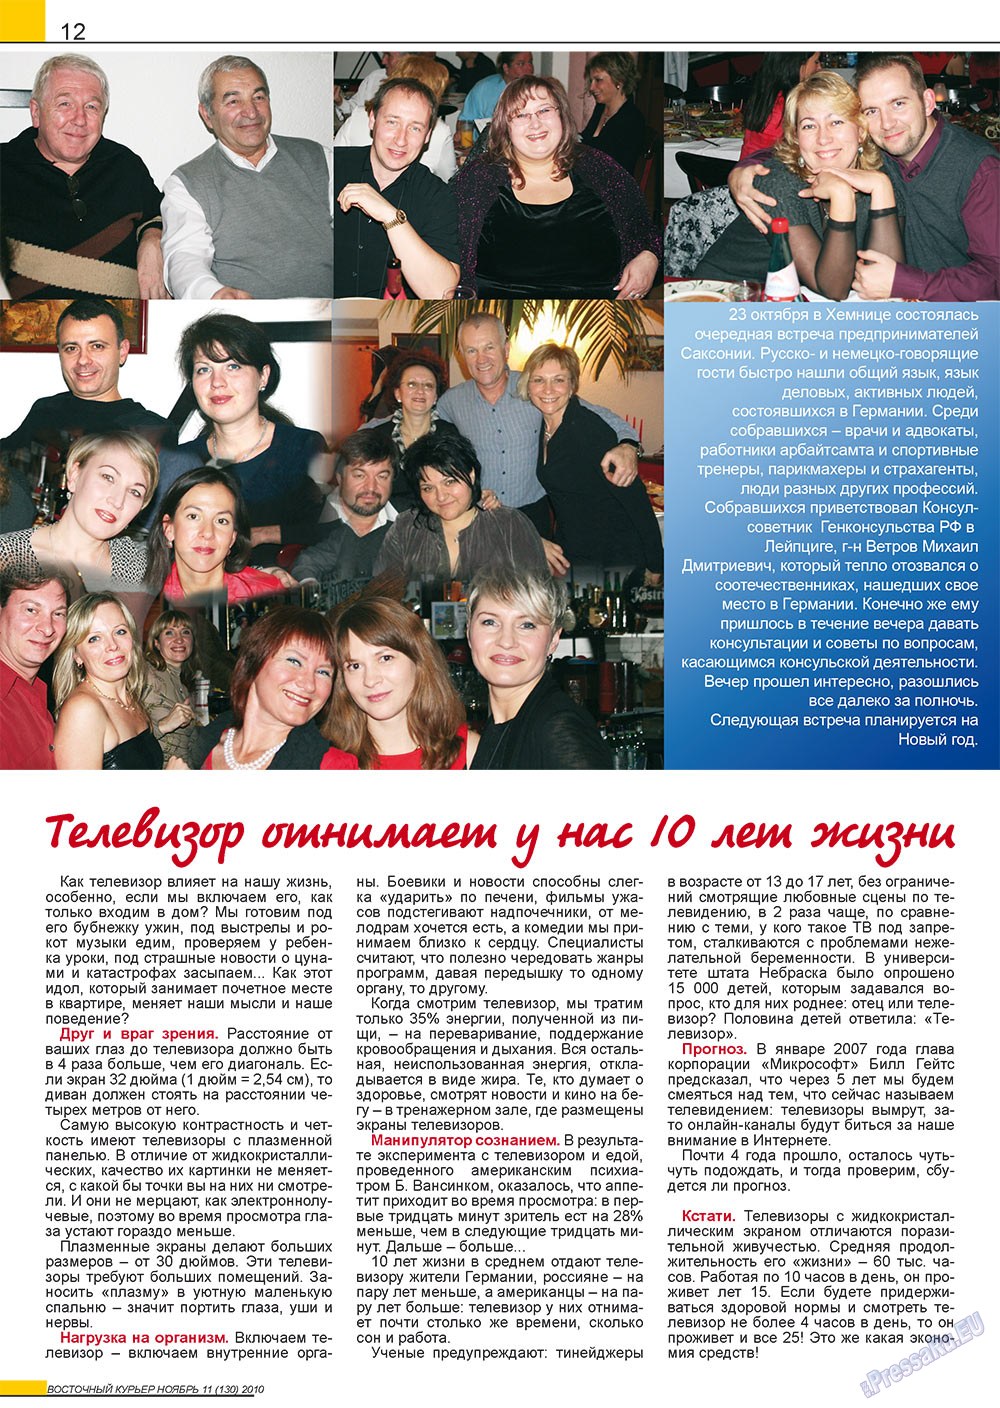 Восточный курьер, журнал. 2010 №11 стр.12